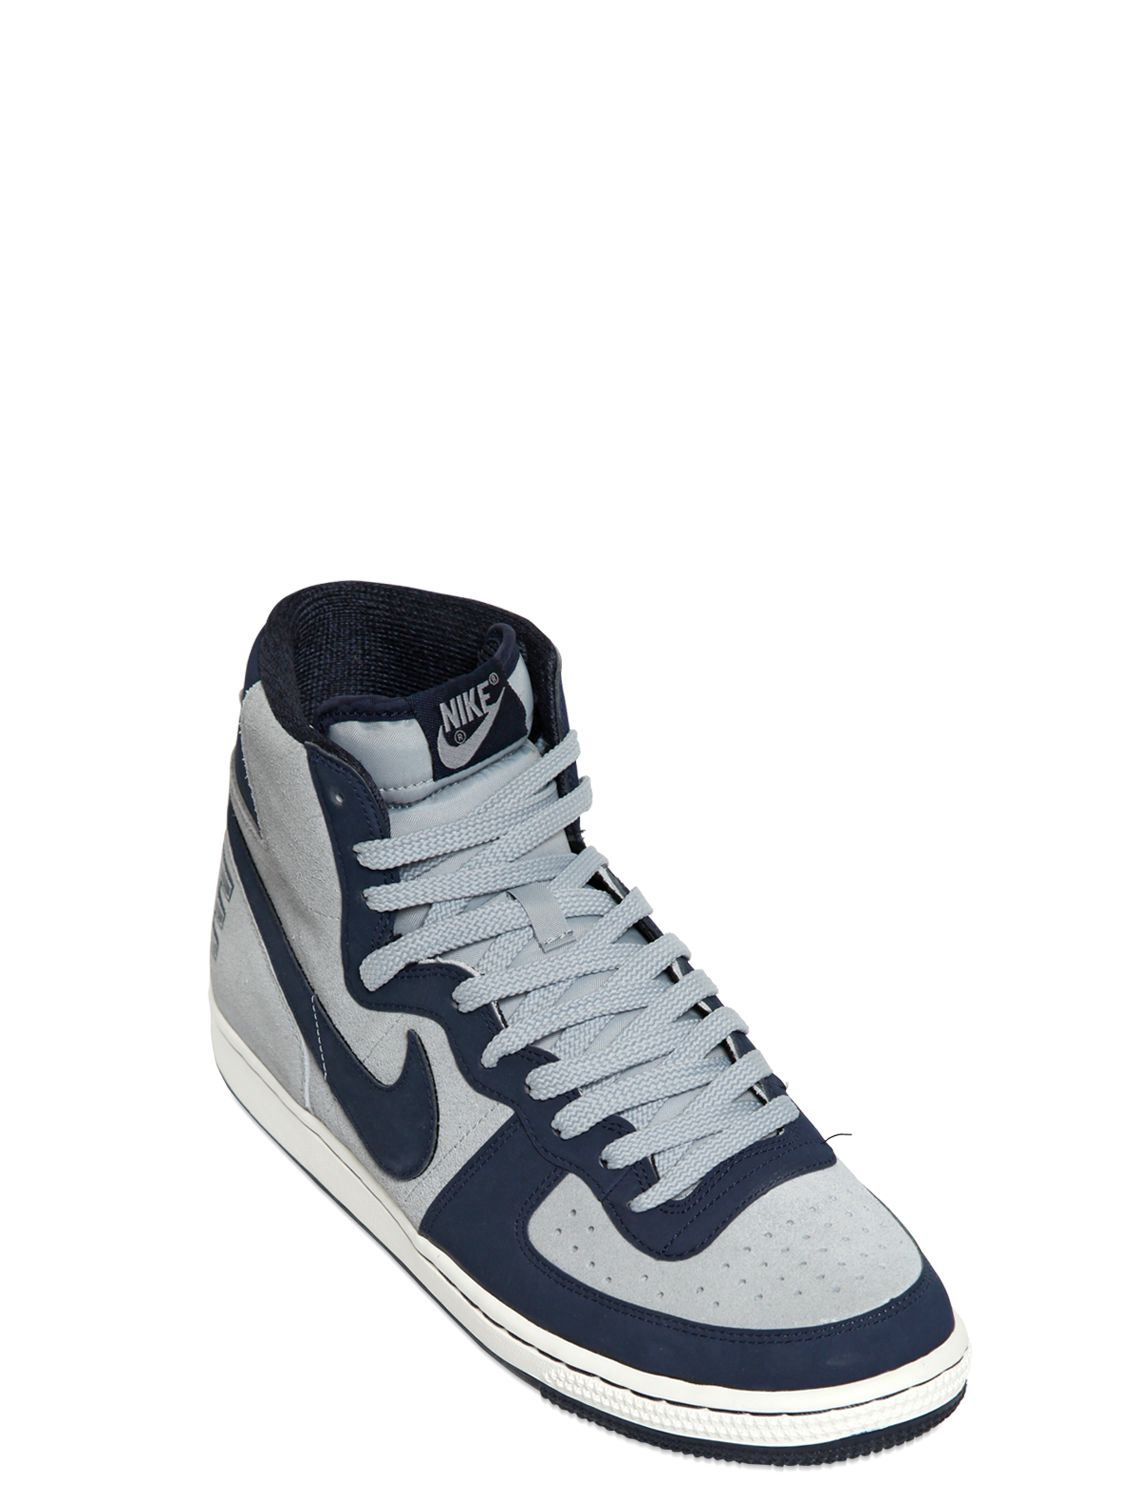 Nike Terminator Vintage High Top Sneakers in Grey/Navy (Blue) for Men | Lyst